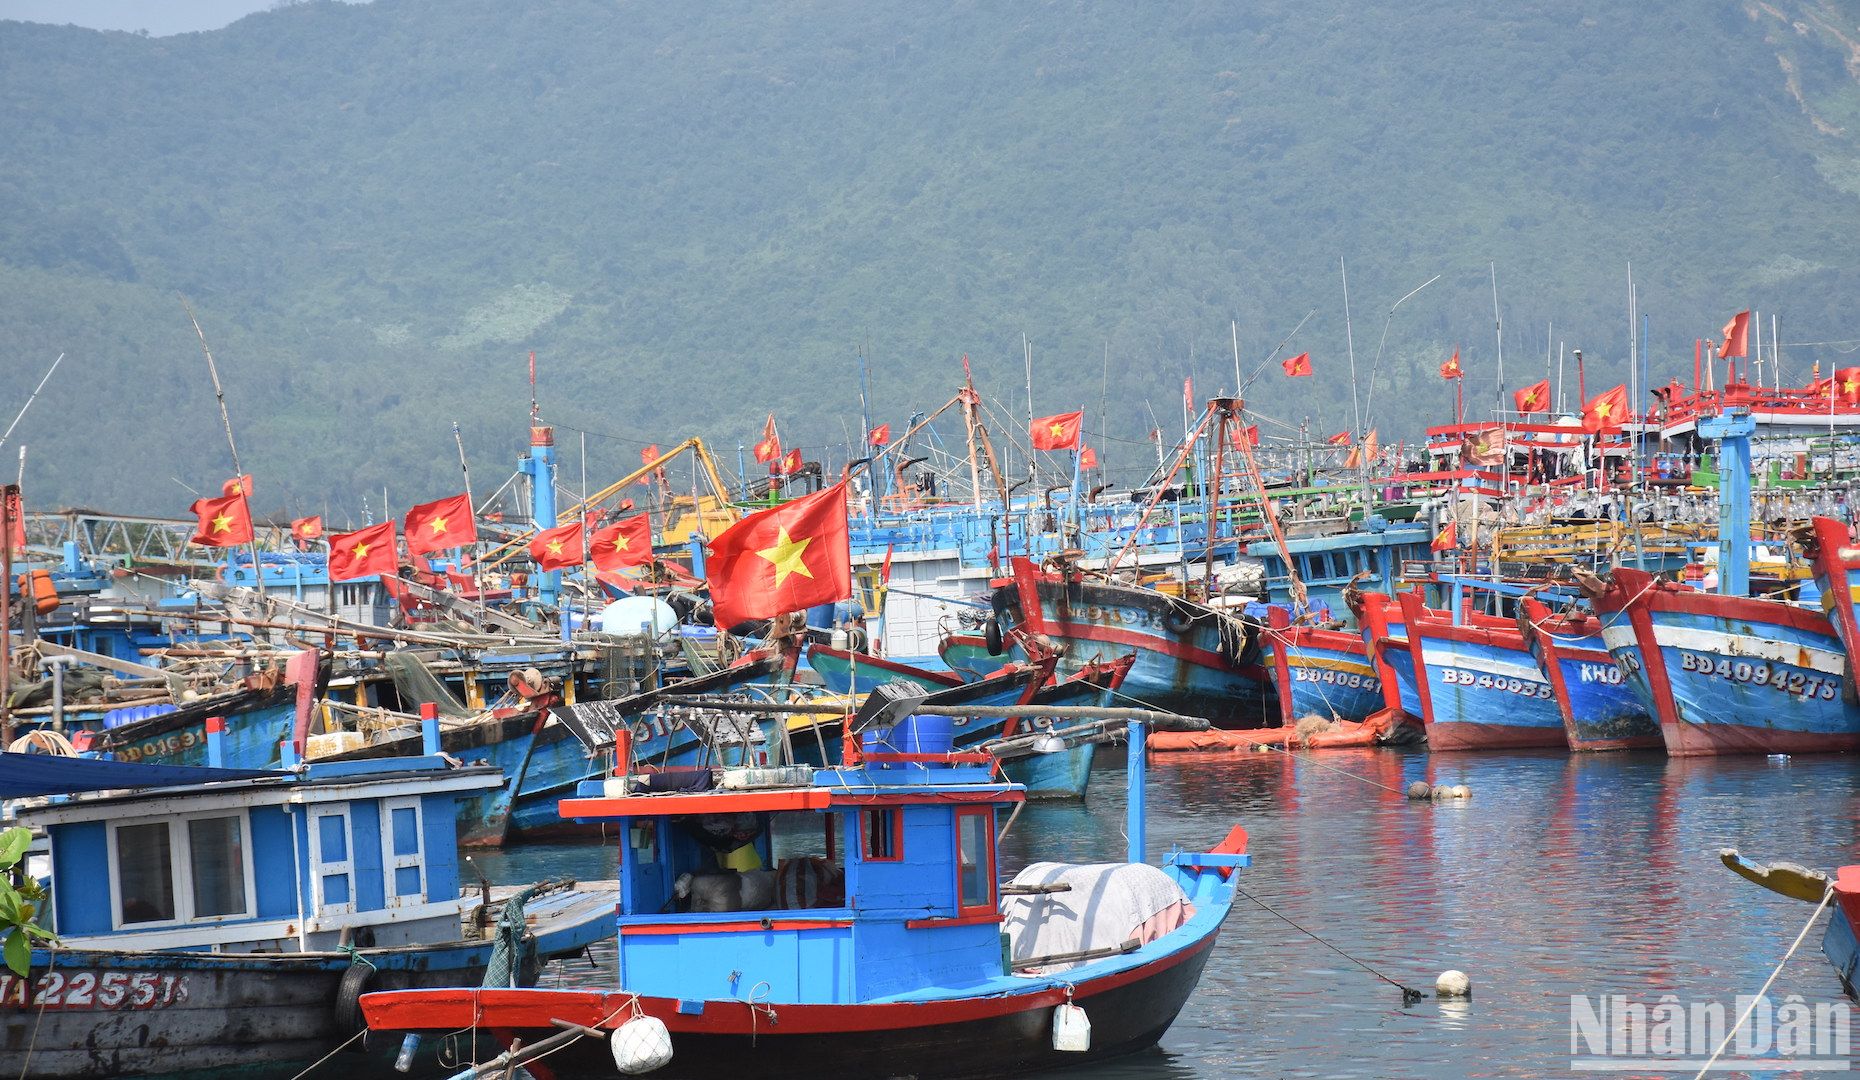 Hàng trăm tàu cá của ngư dân khu vực miền trung đang neo đậu tại Âu thuyền và cảng cá Thọ Quang sẽ ra khơi cho chuyến biển đầu năm trong vài ngày tới.